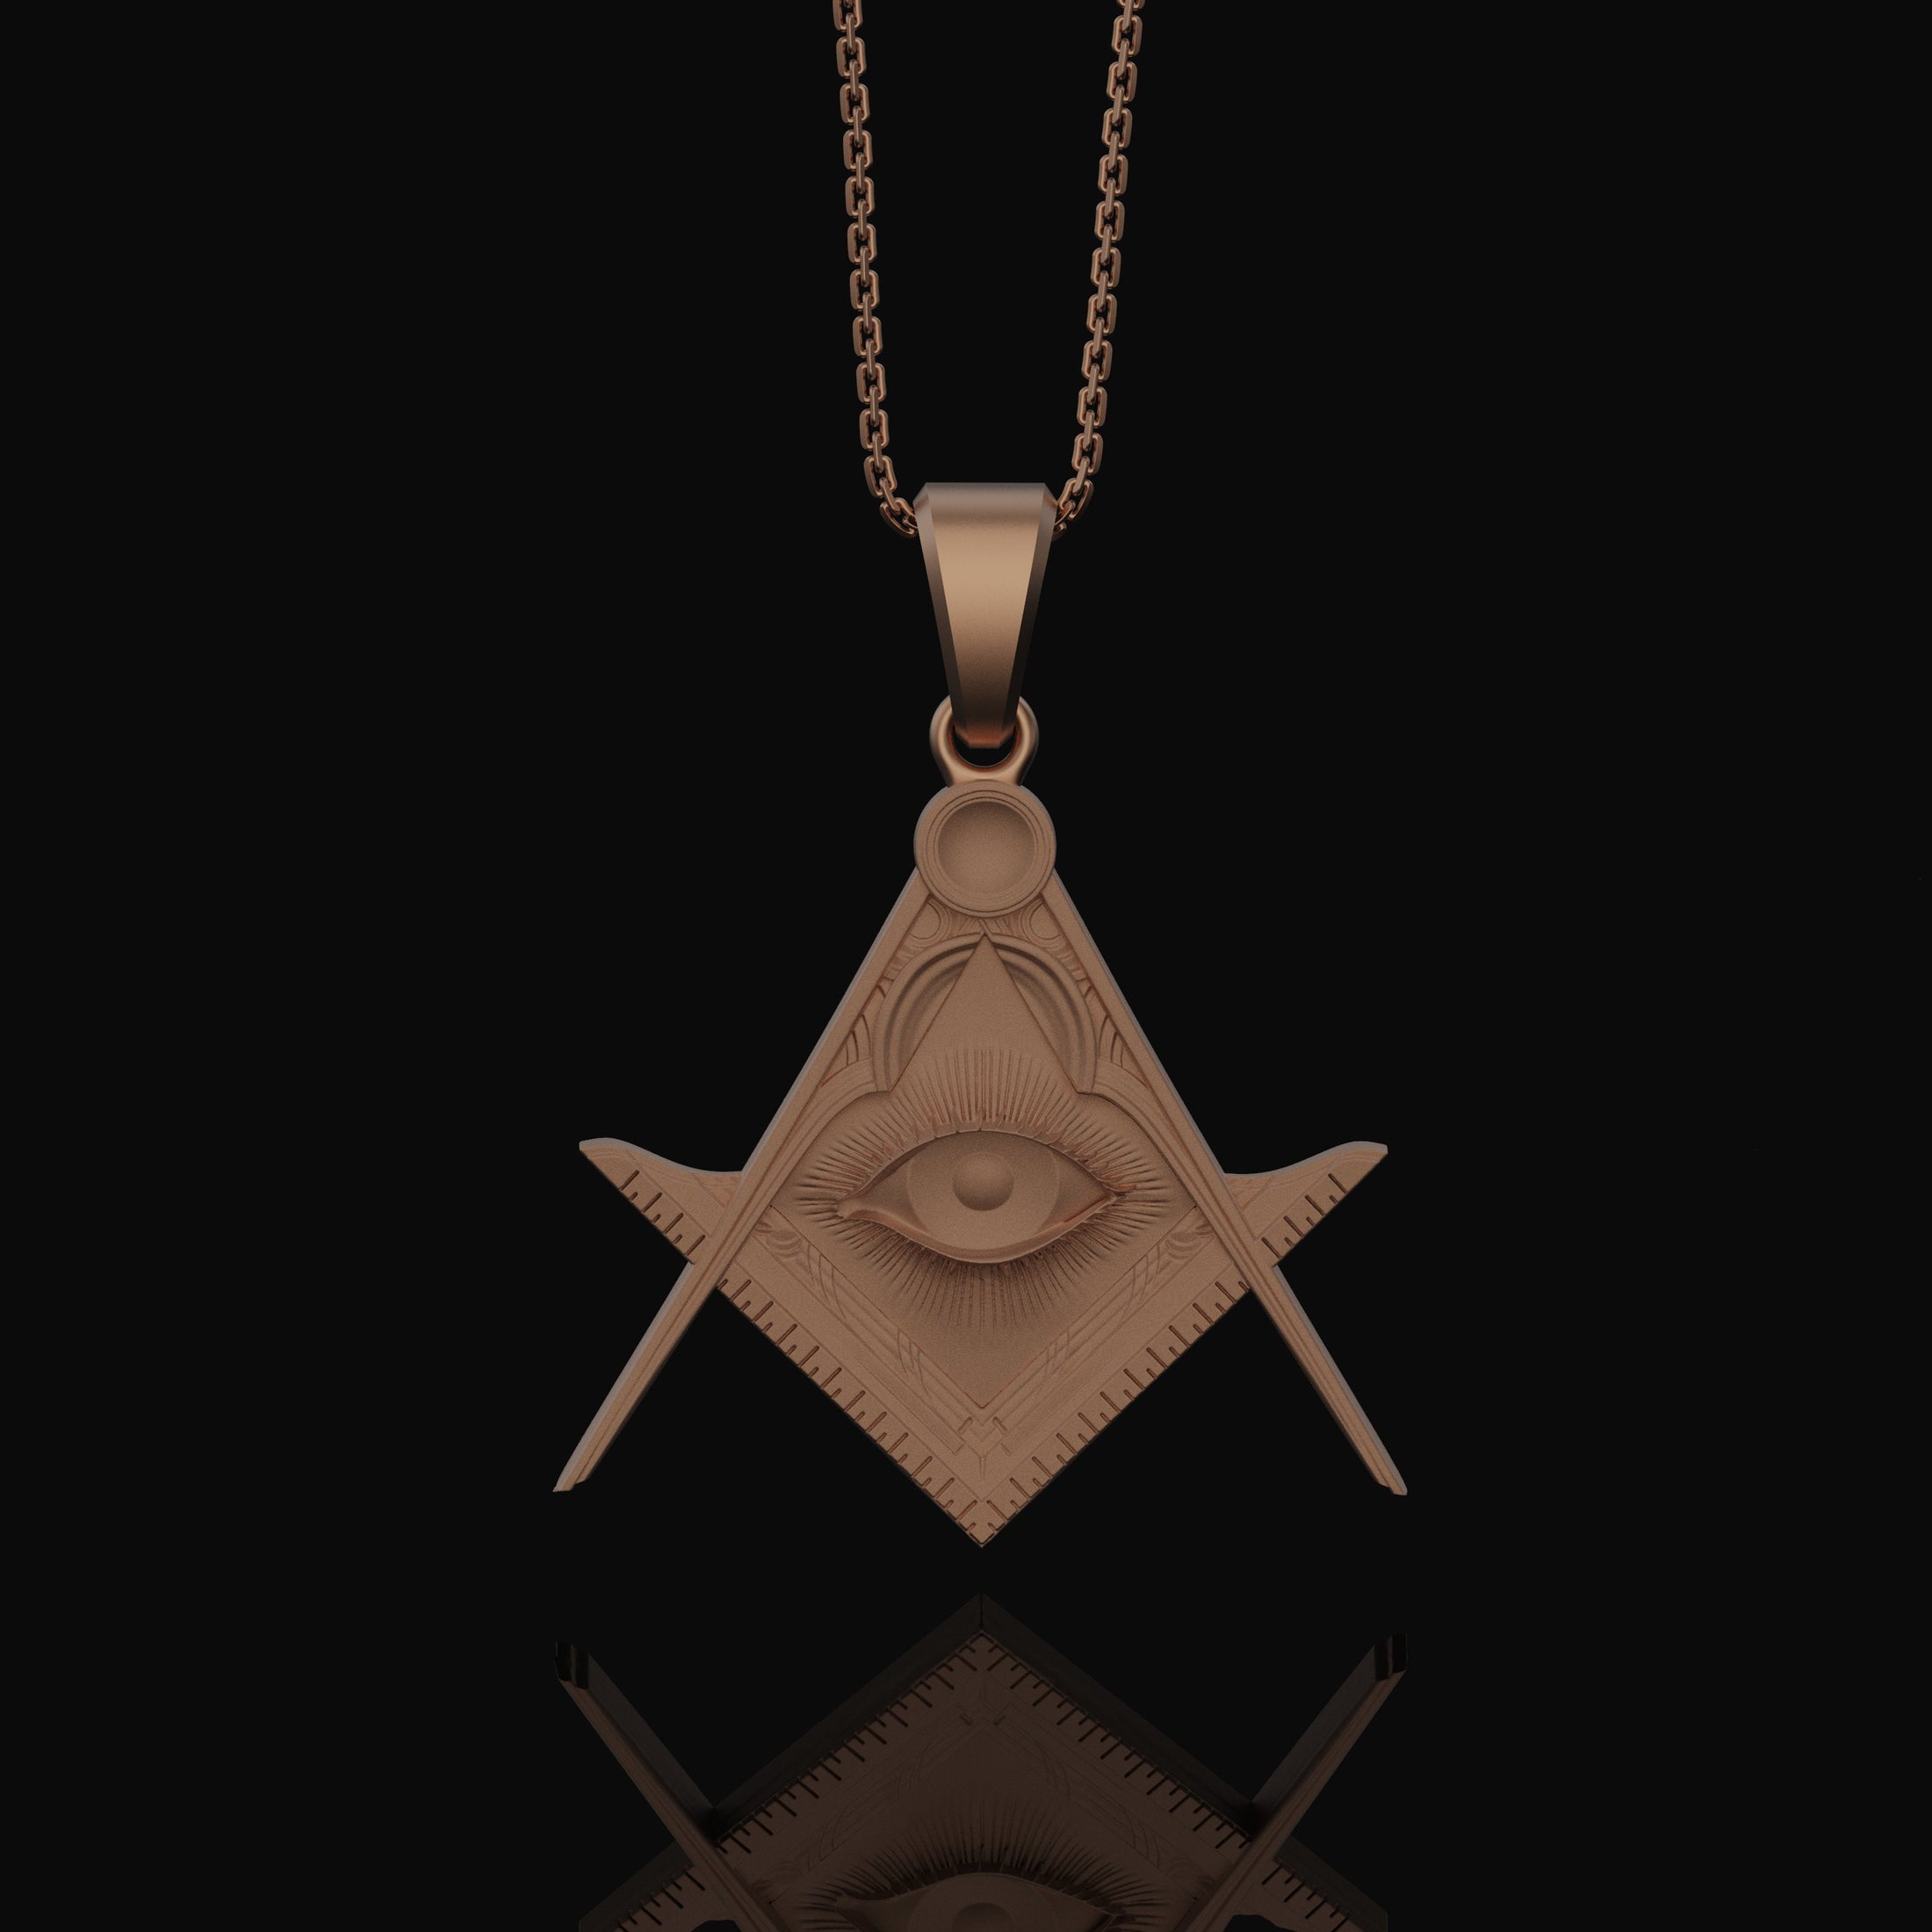 Silver Master Mason Pendant - Freemason Symbol with Eye of Providence, Masonic Necklace, Esoteric Jewelry